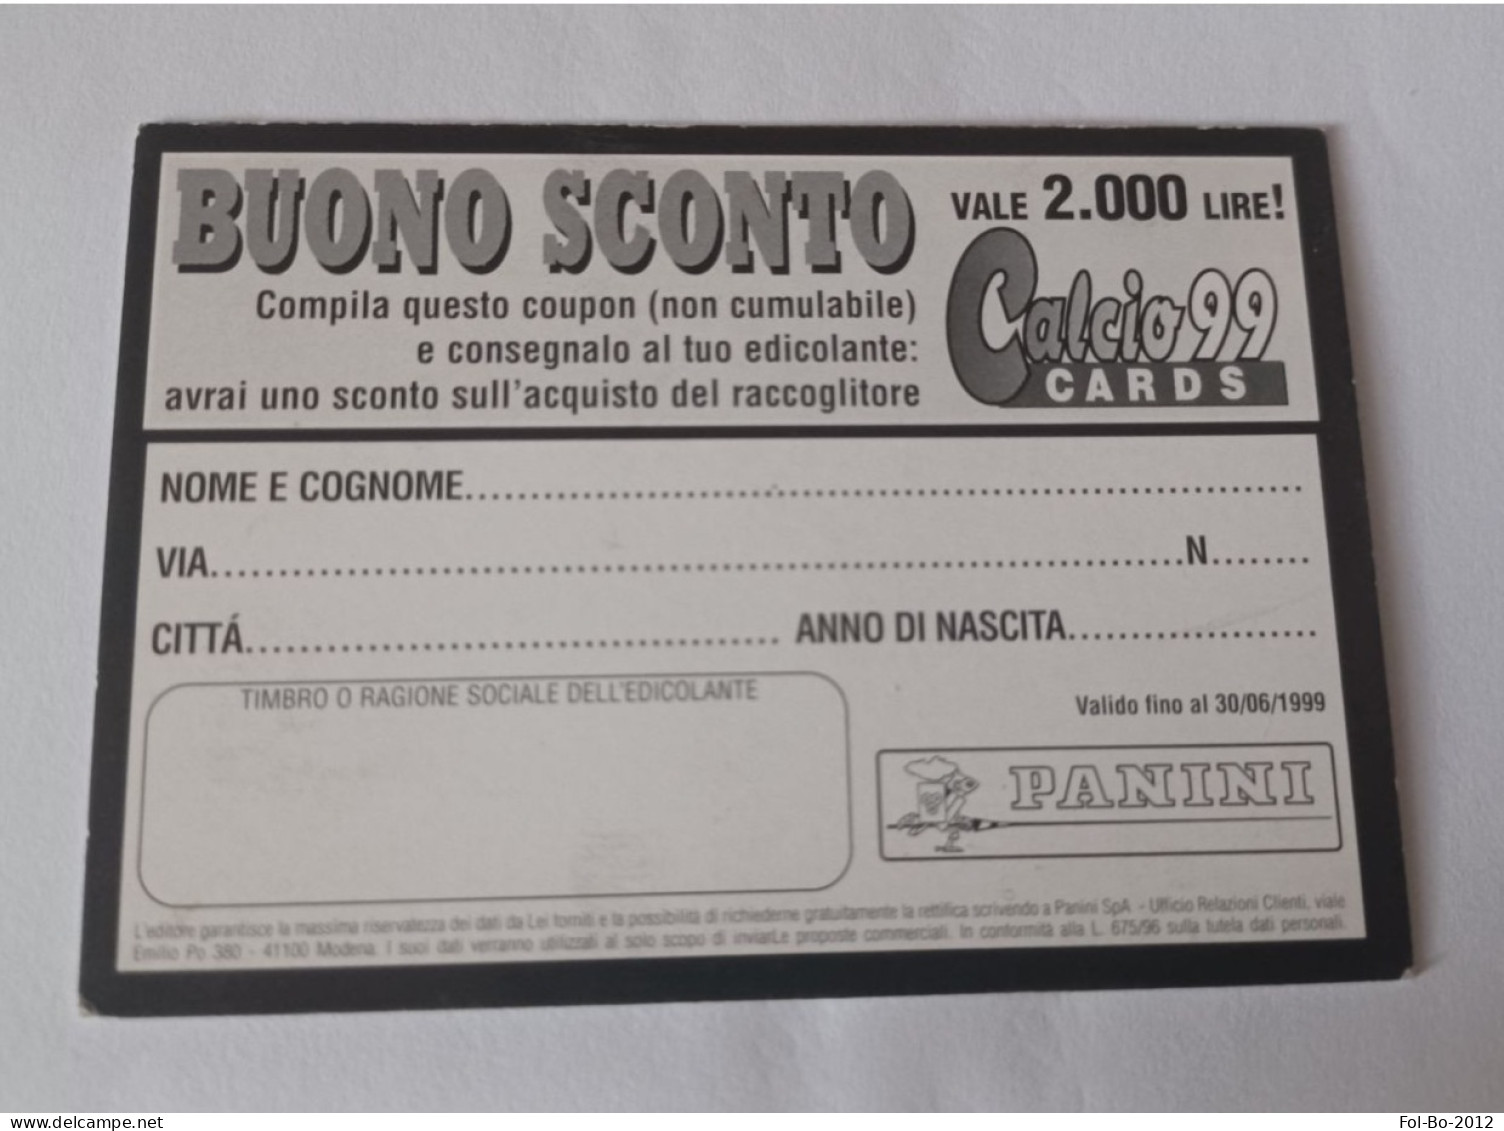 Baggio Calcio Calciatori 99 Card Panini Buono Sconto - Italienische Ausgabe